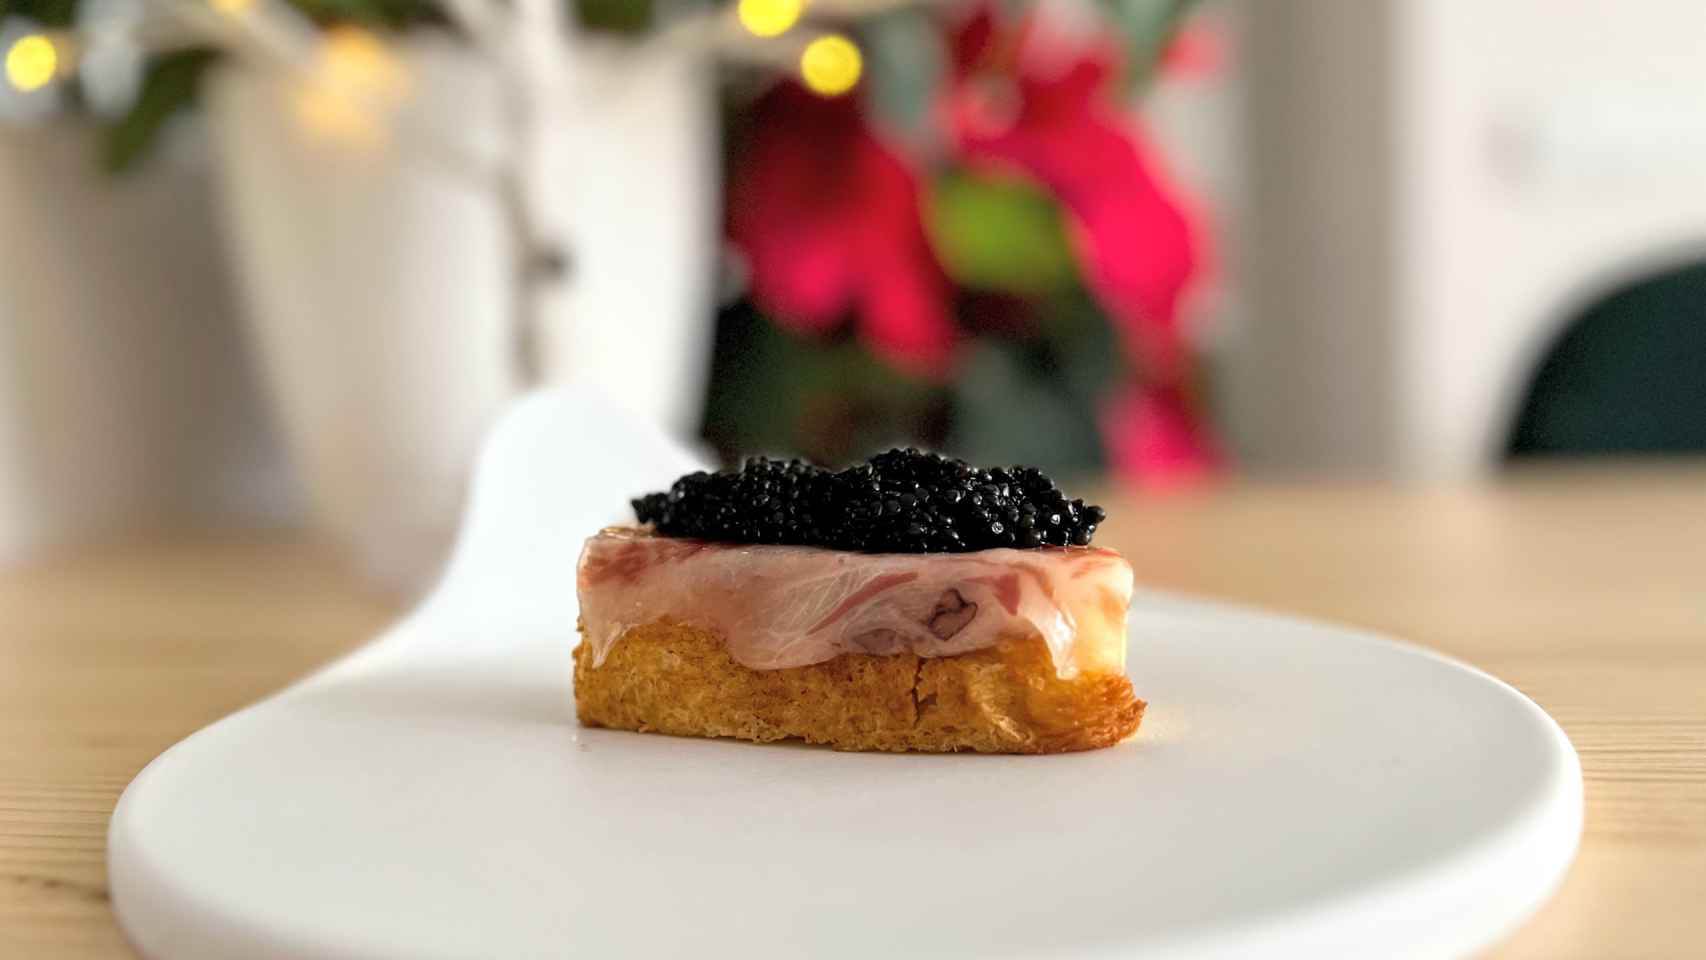 Caviar acompañado de un brioche y papada ibérica